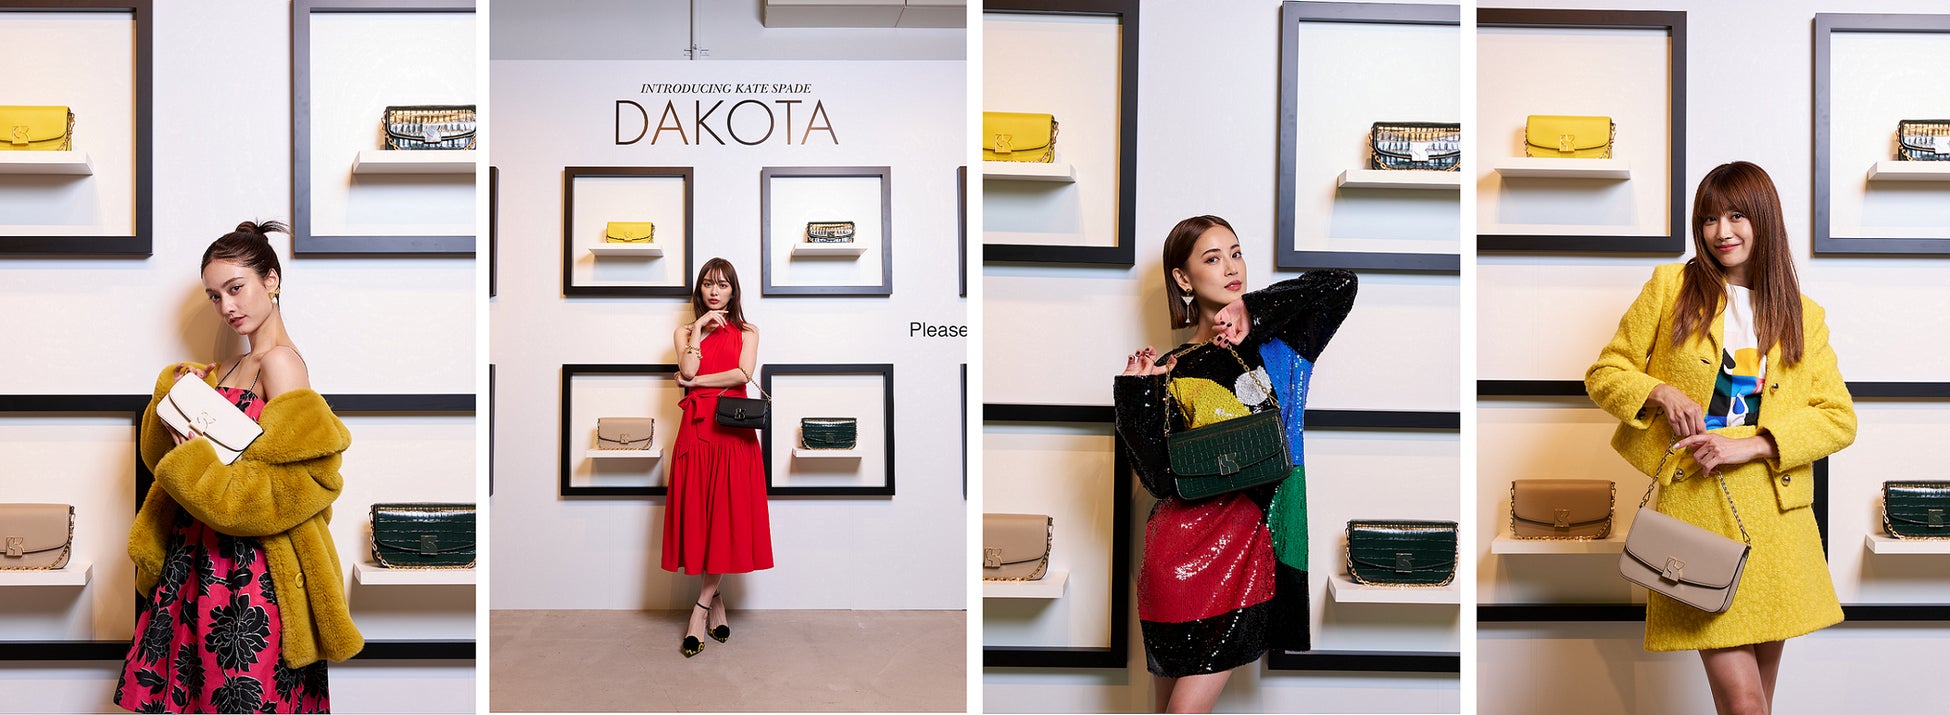 ケイト・スペード ニューヨーク 新アイコンバッグ 「ケイト・スペード ダコタ」発売記念イベント「Kate Spade Dakota Event in Tokyo」を開催